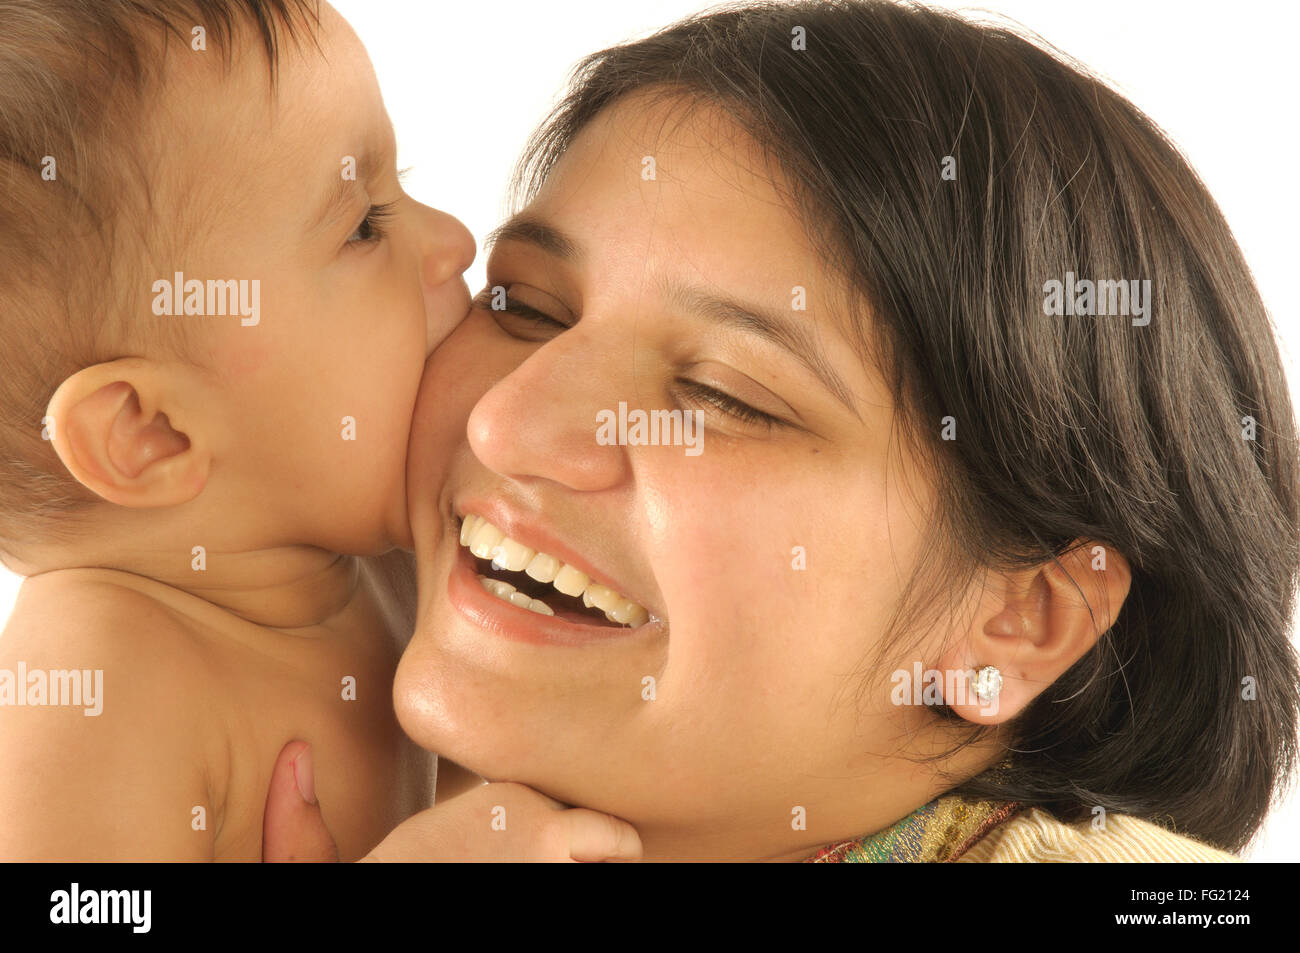 Mère avec un enfant d'essayer de mordre la joue M.# 592 29 Mars 2008 Banque D'Images